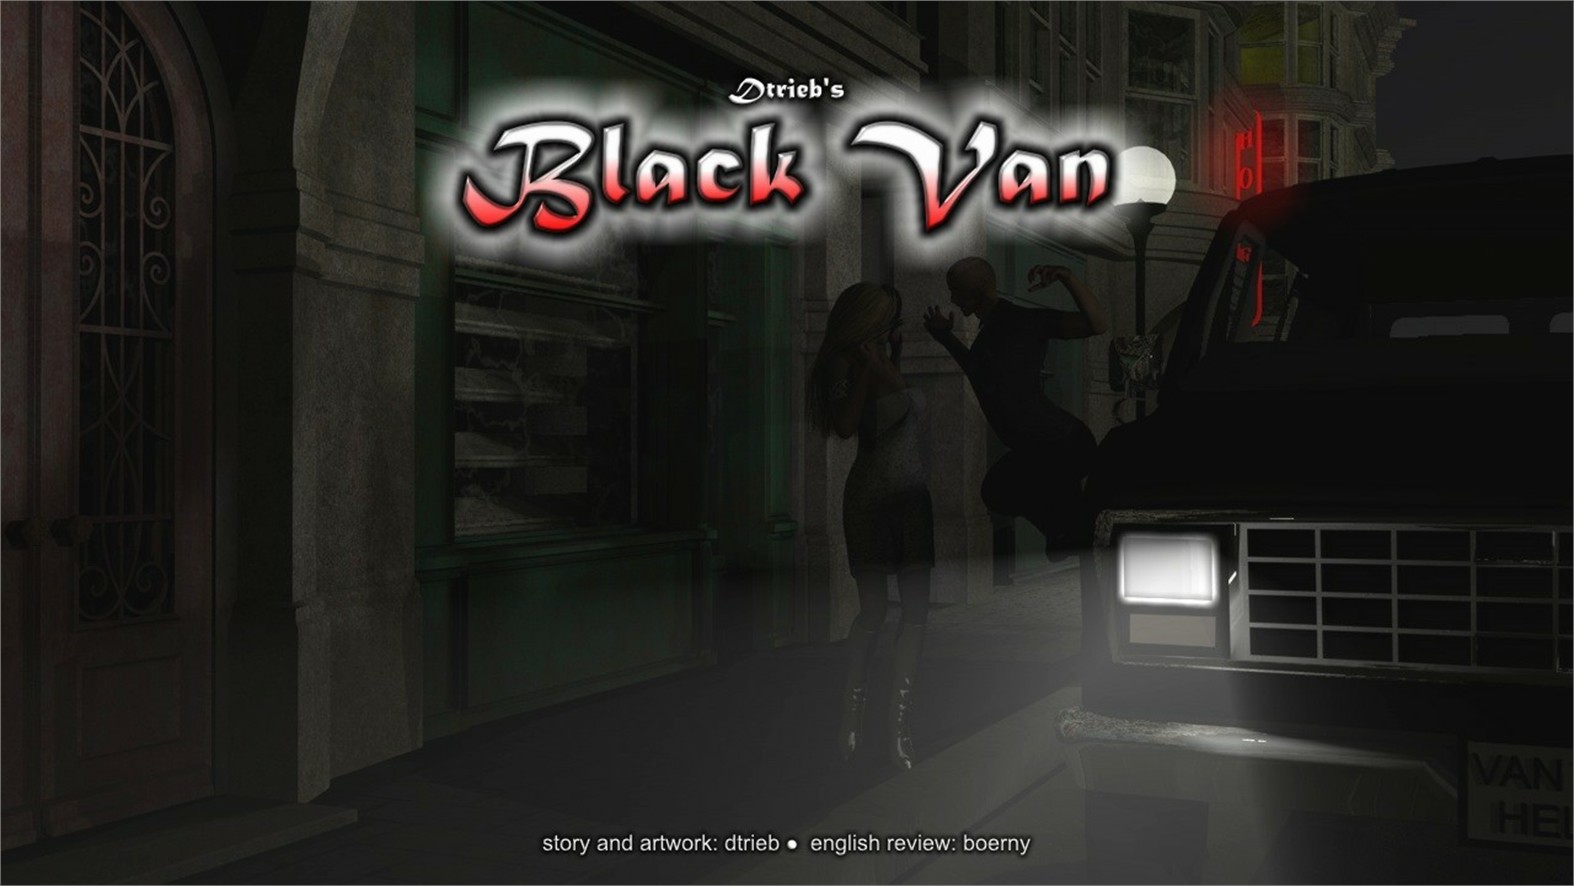 7193973 main Black Van 00